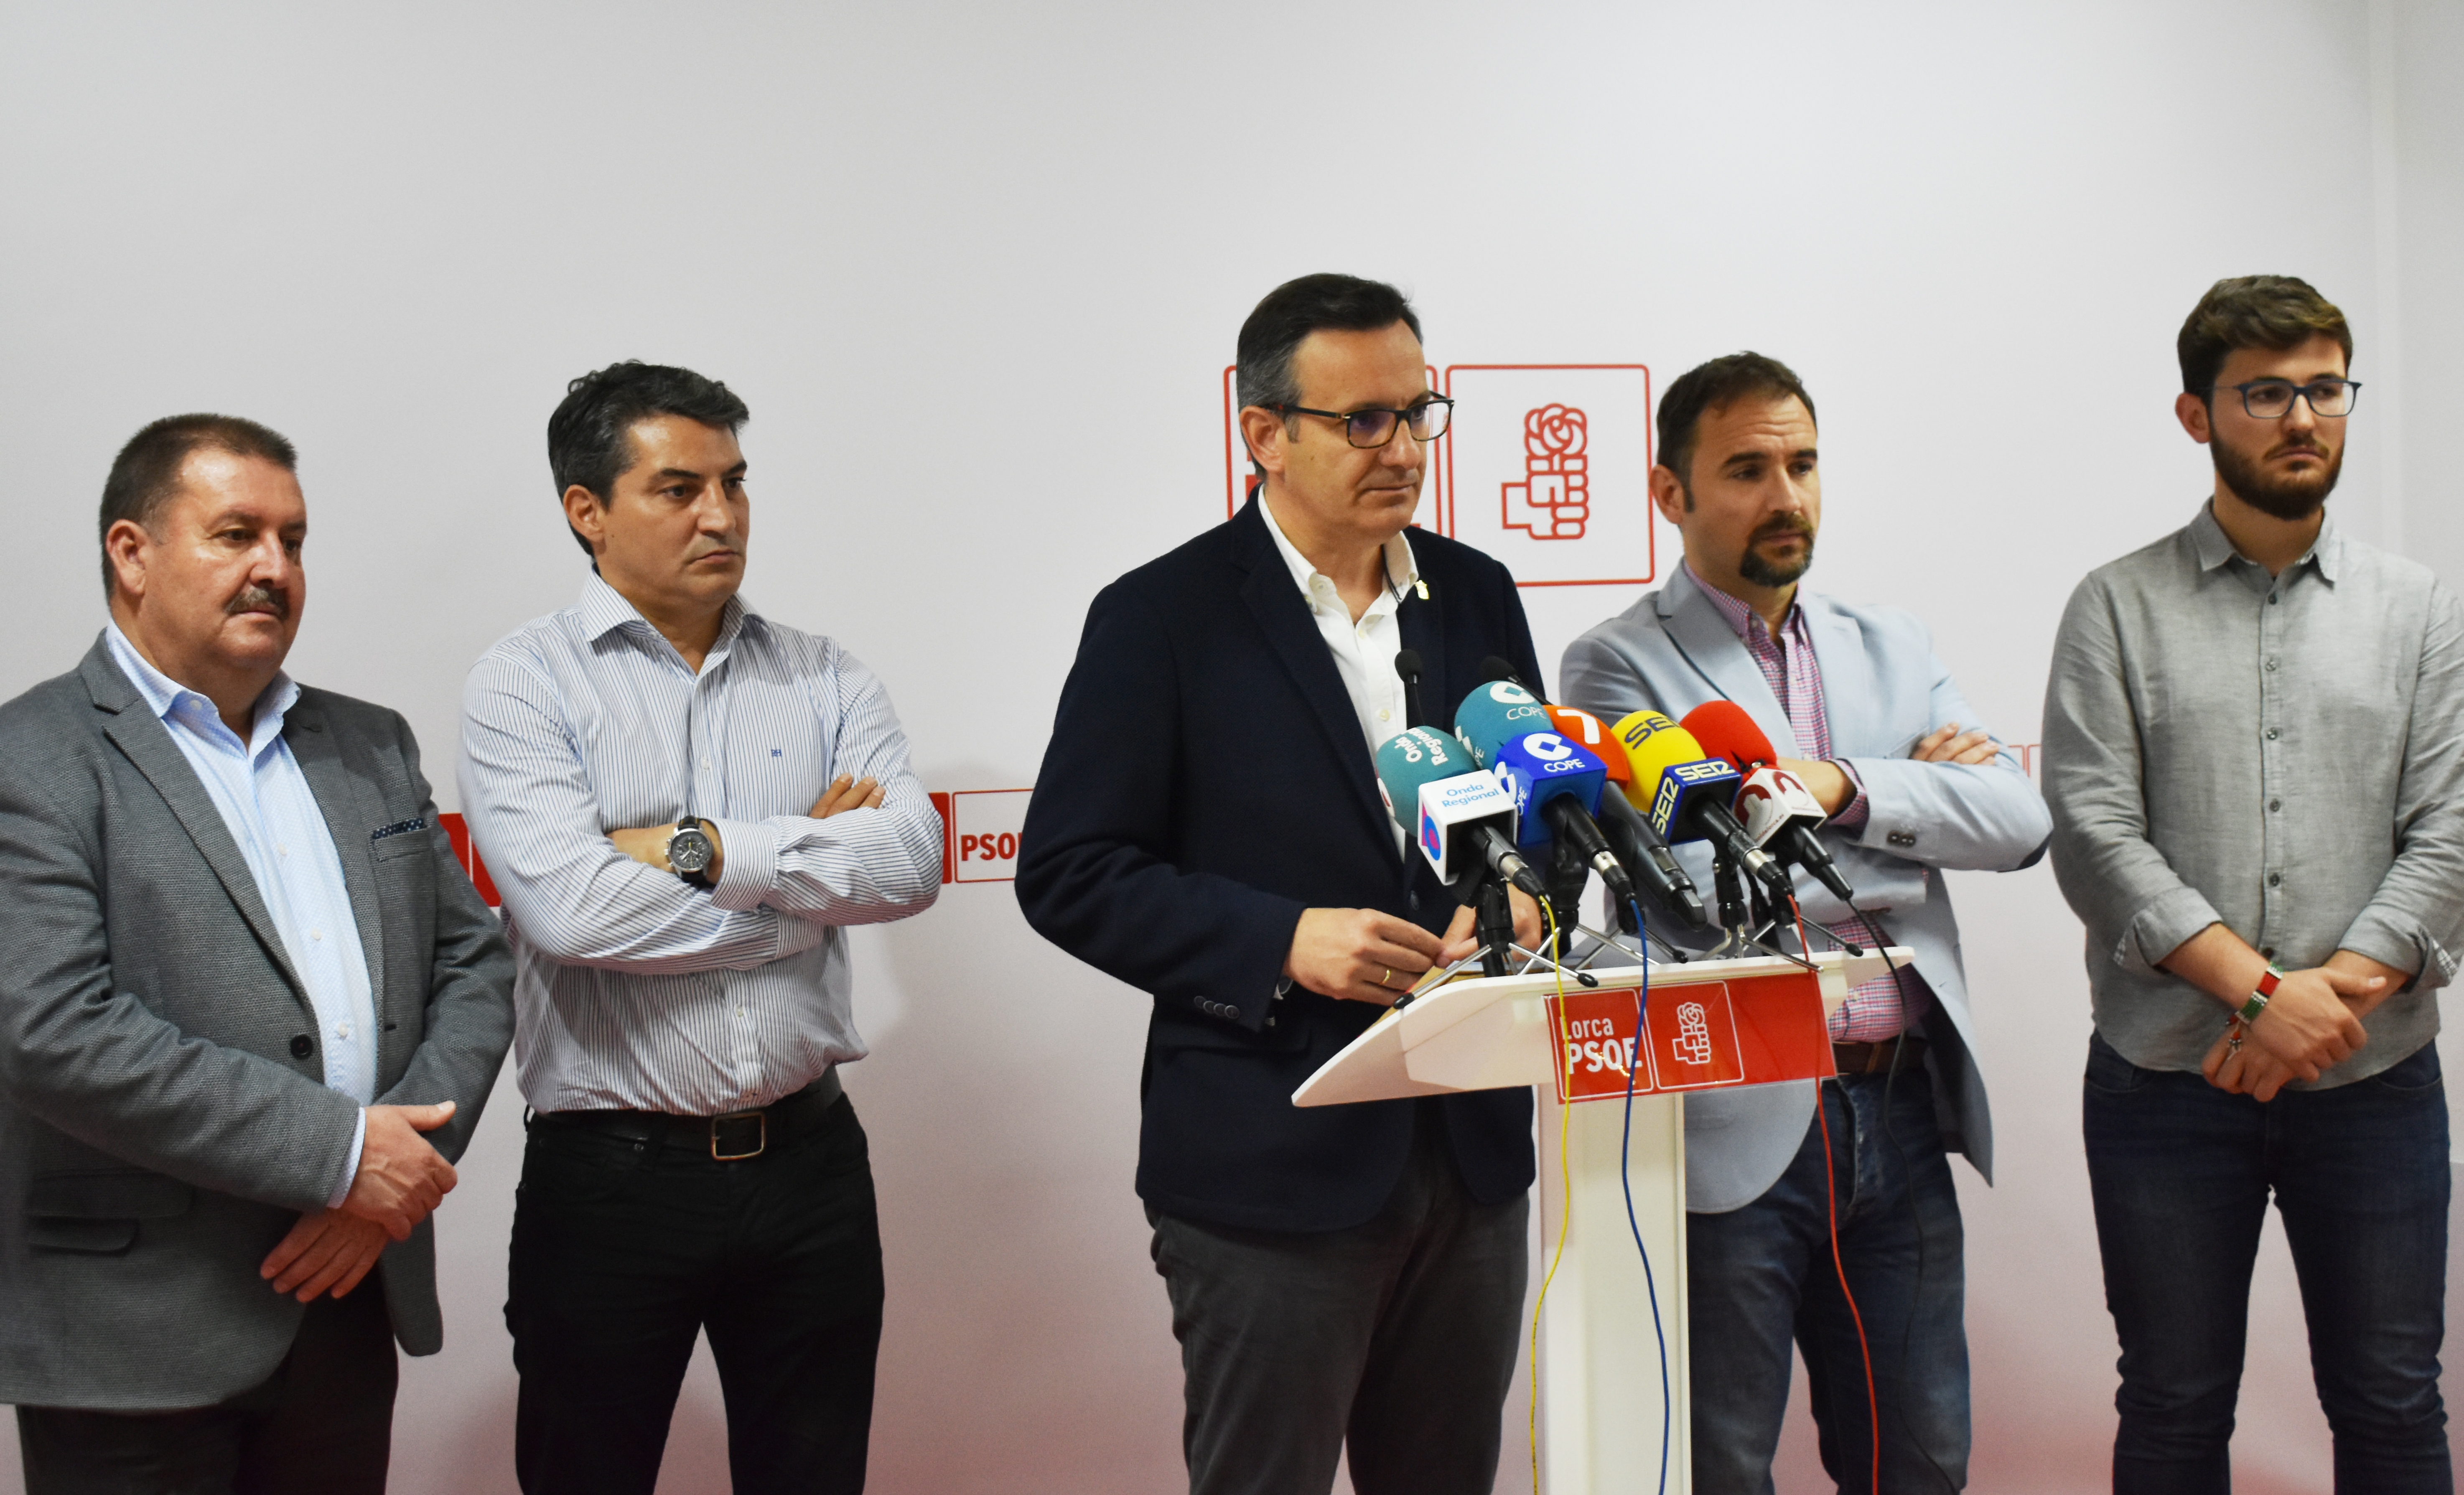 El PSOE apuesta por la llegada del AVE desde el consenso con los territorios frente a la desastrosa planificación del PP “que parte ciudades en dos”